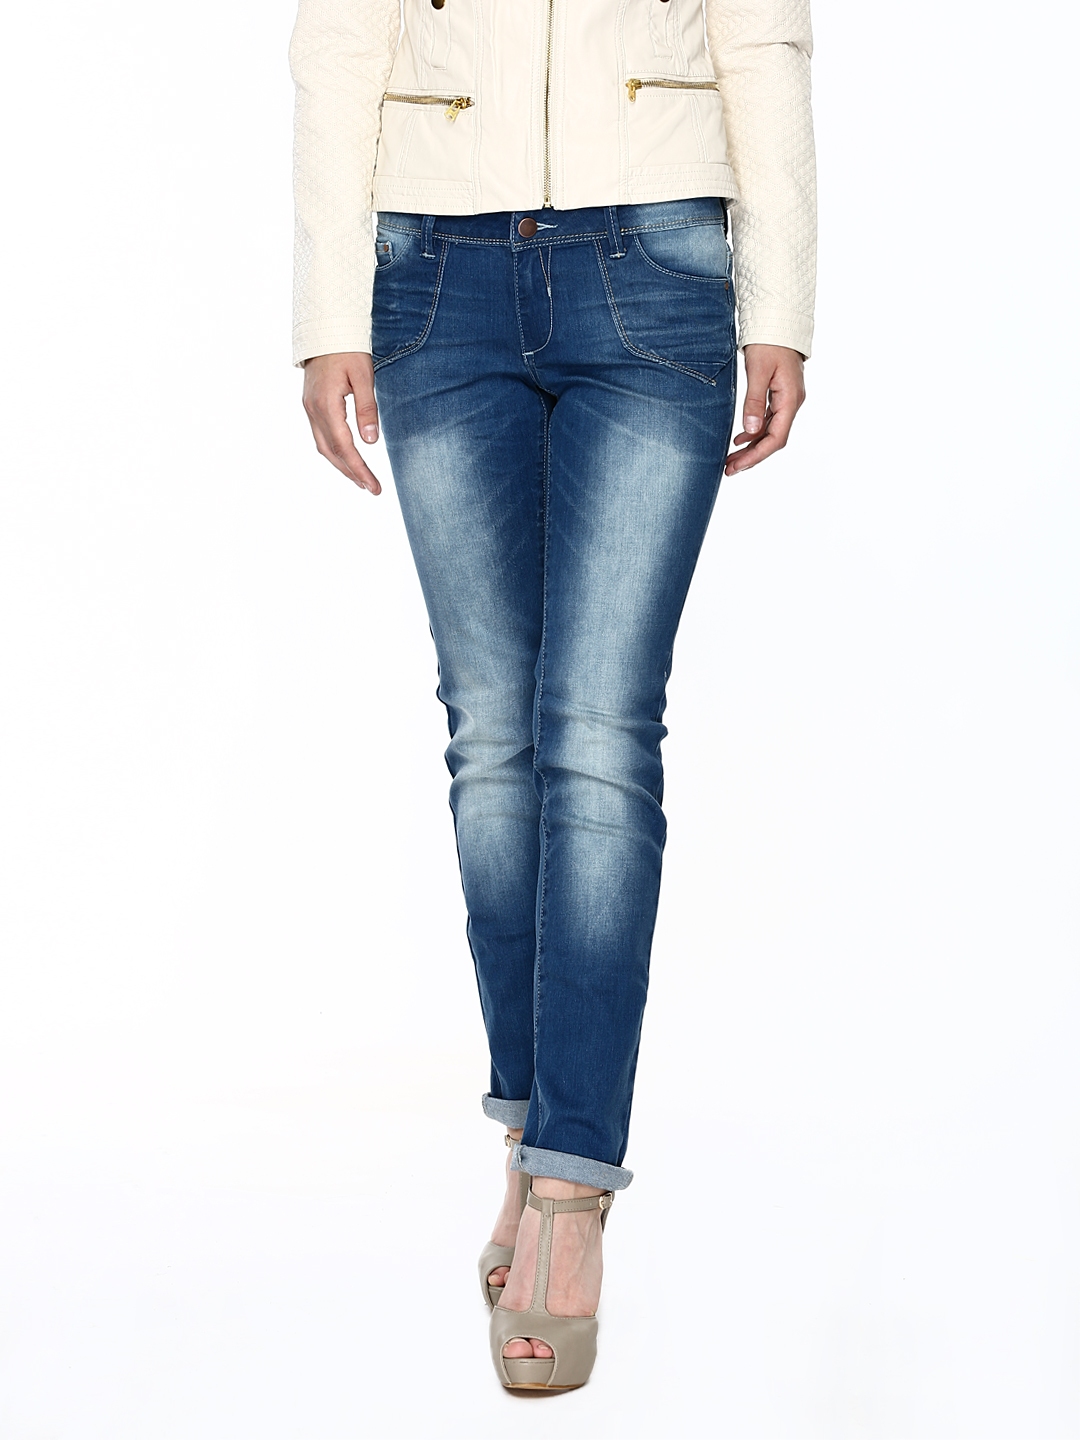 Buy Vero Moda Women Blue Jeans - Jeans for Women 398933 | Myntra